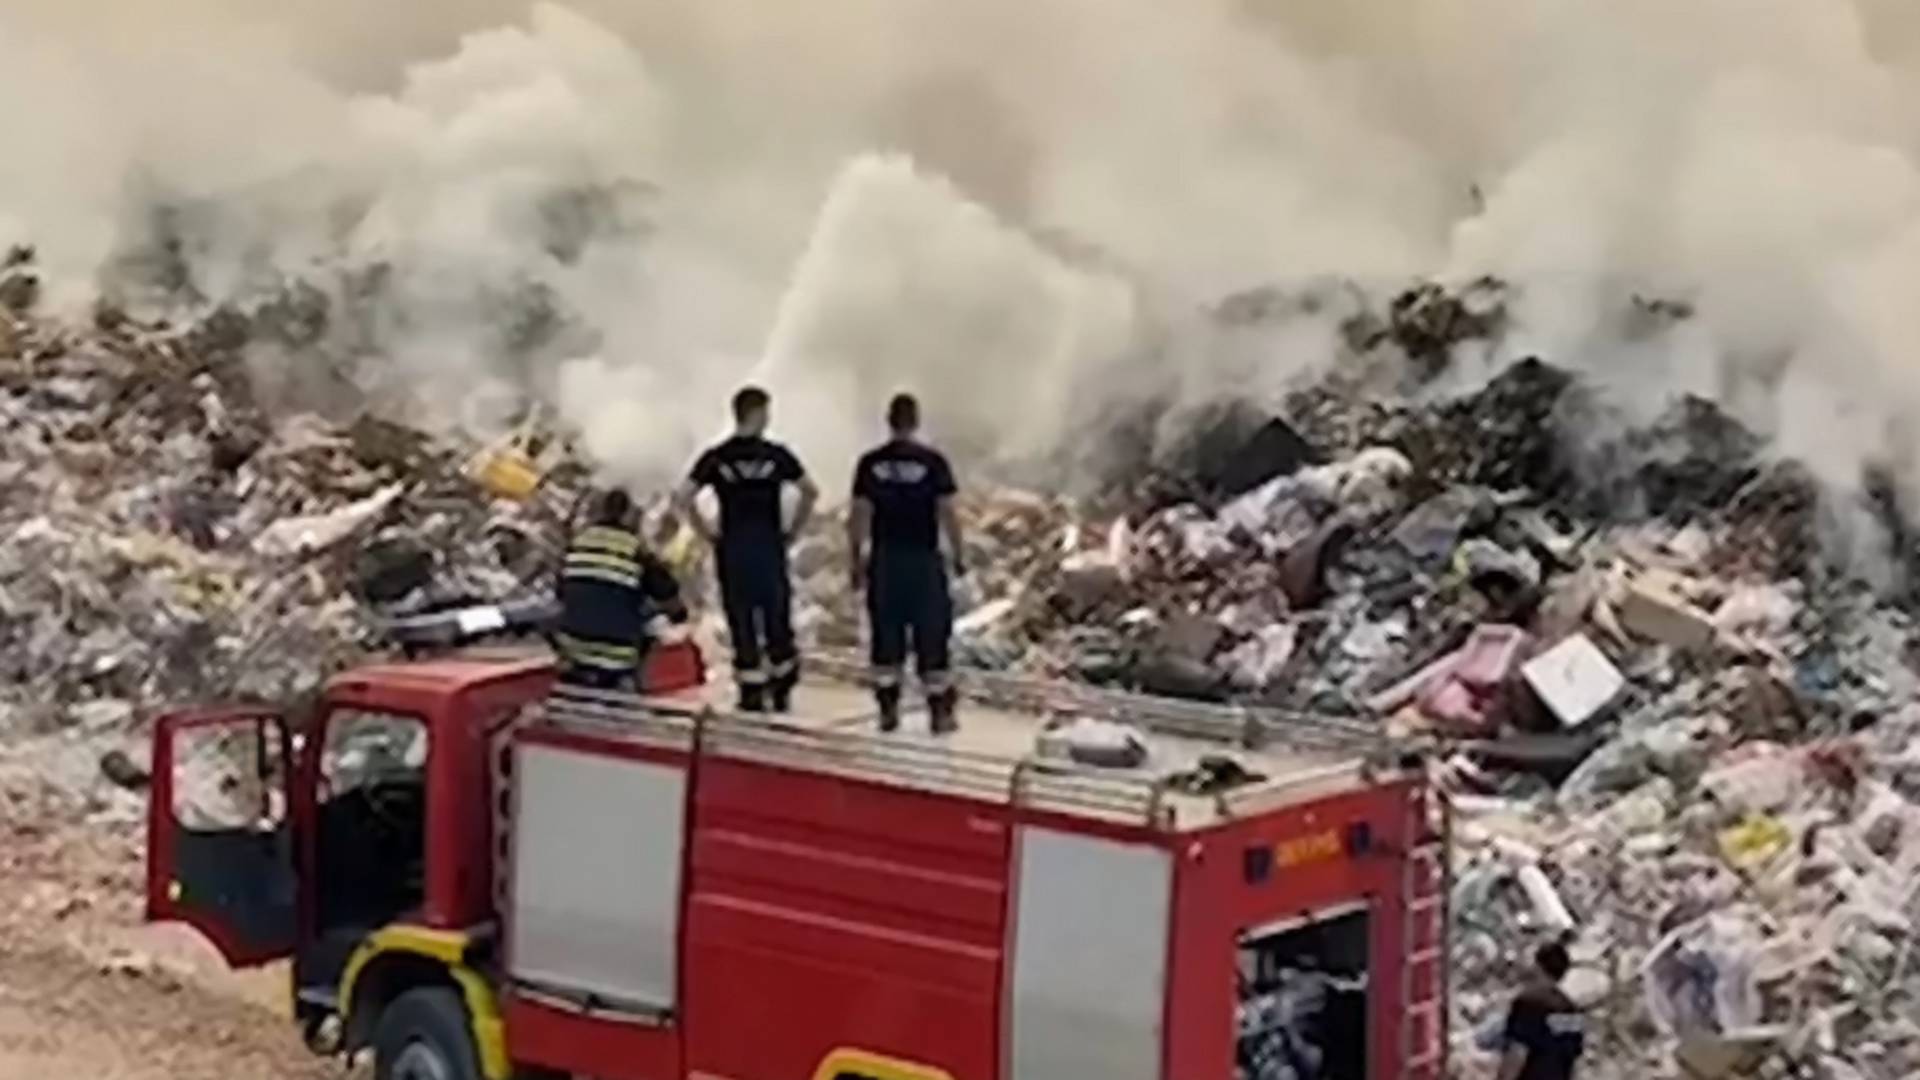 Reakcije ljudi na požar u Vinči su upozorenje da ništa nismo shvatili